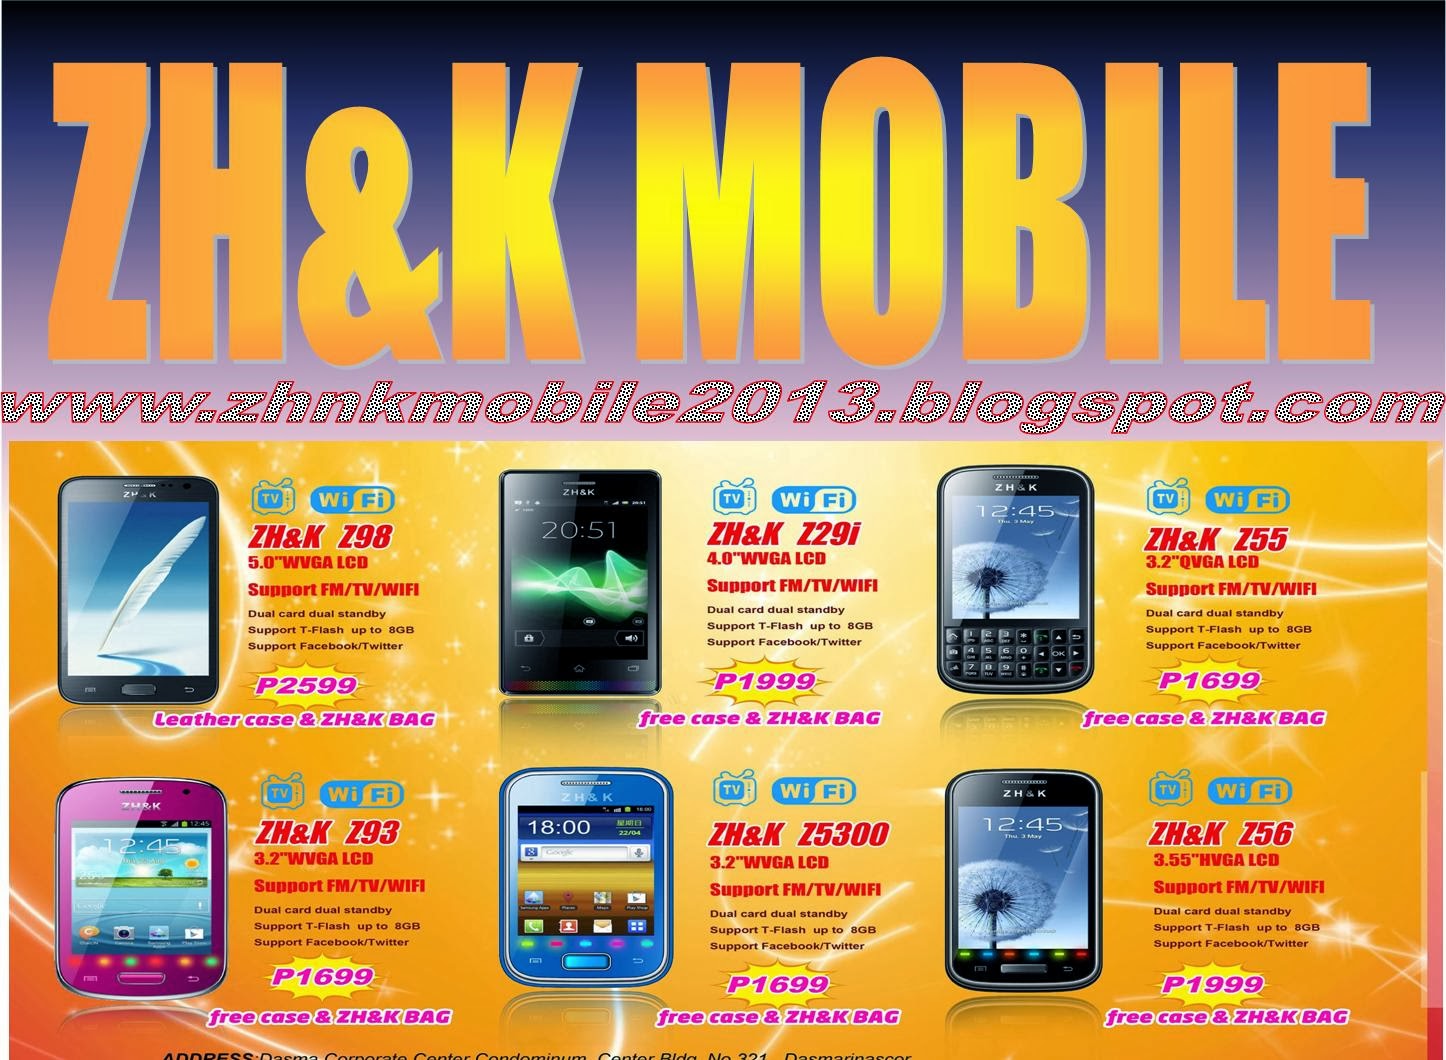 ZH&K Mobile